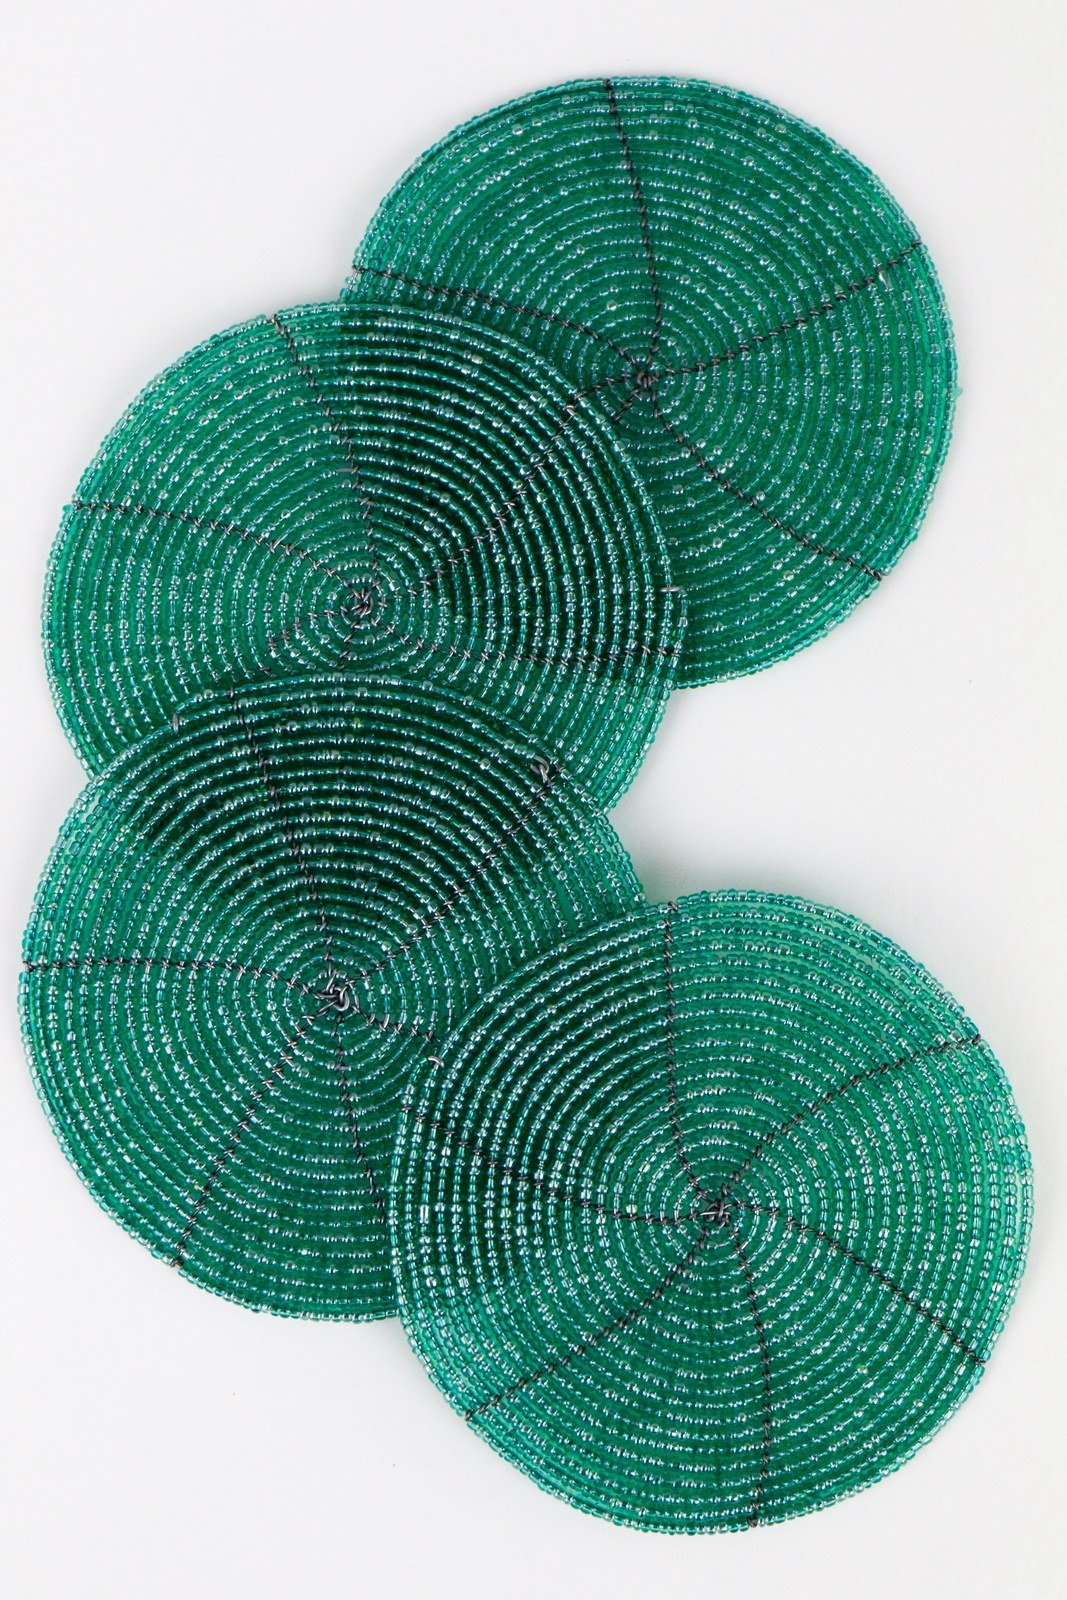 Beaded Coasters Set of 4 - Khutsala™ Artisans